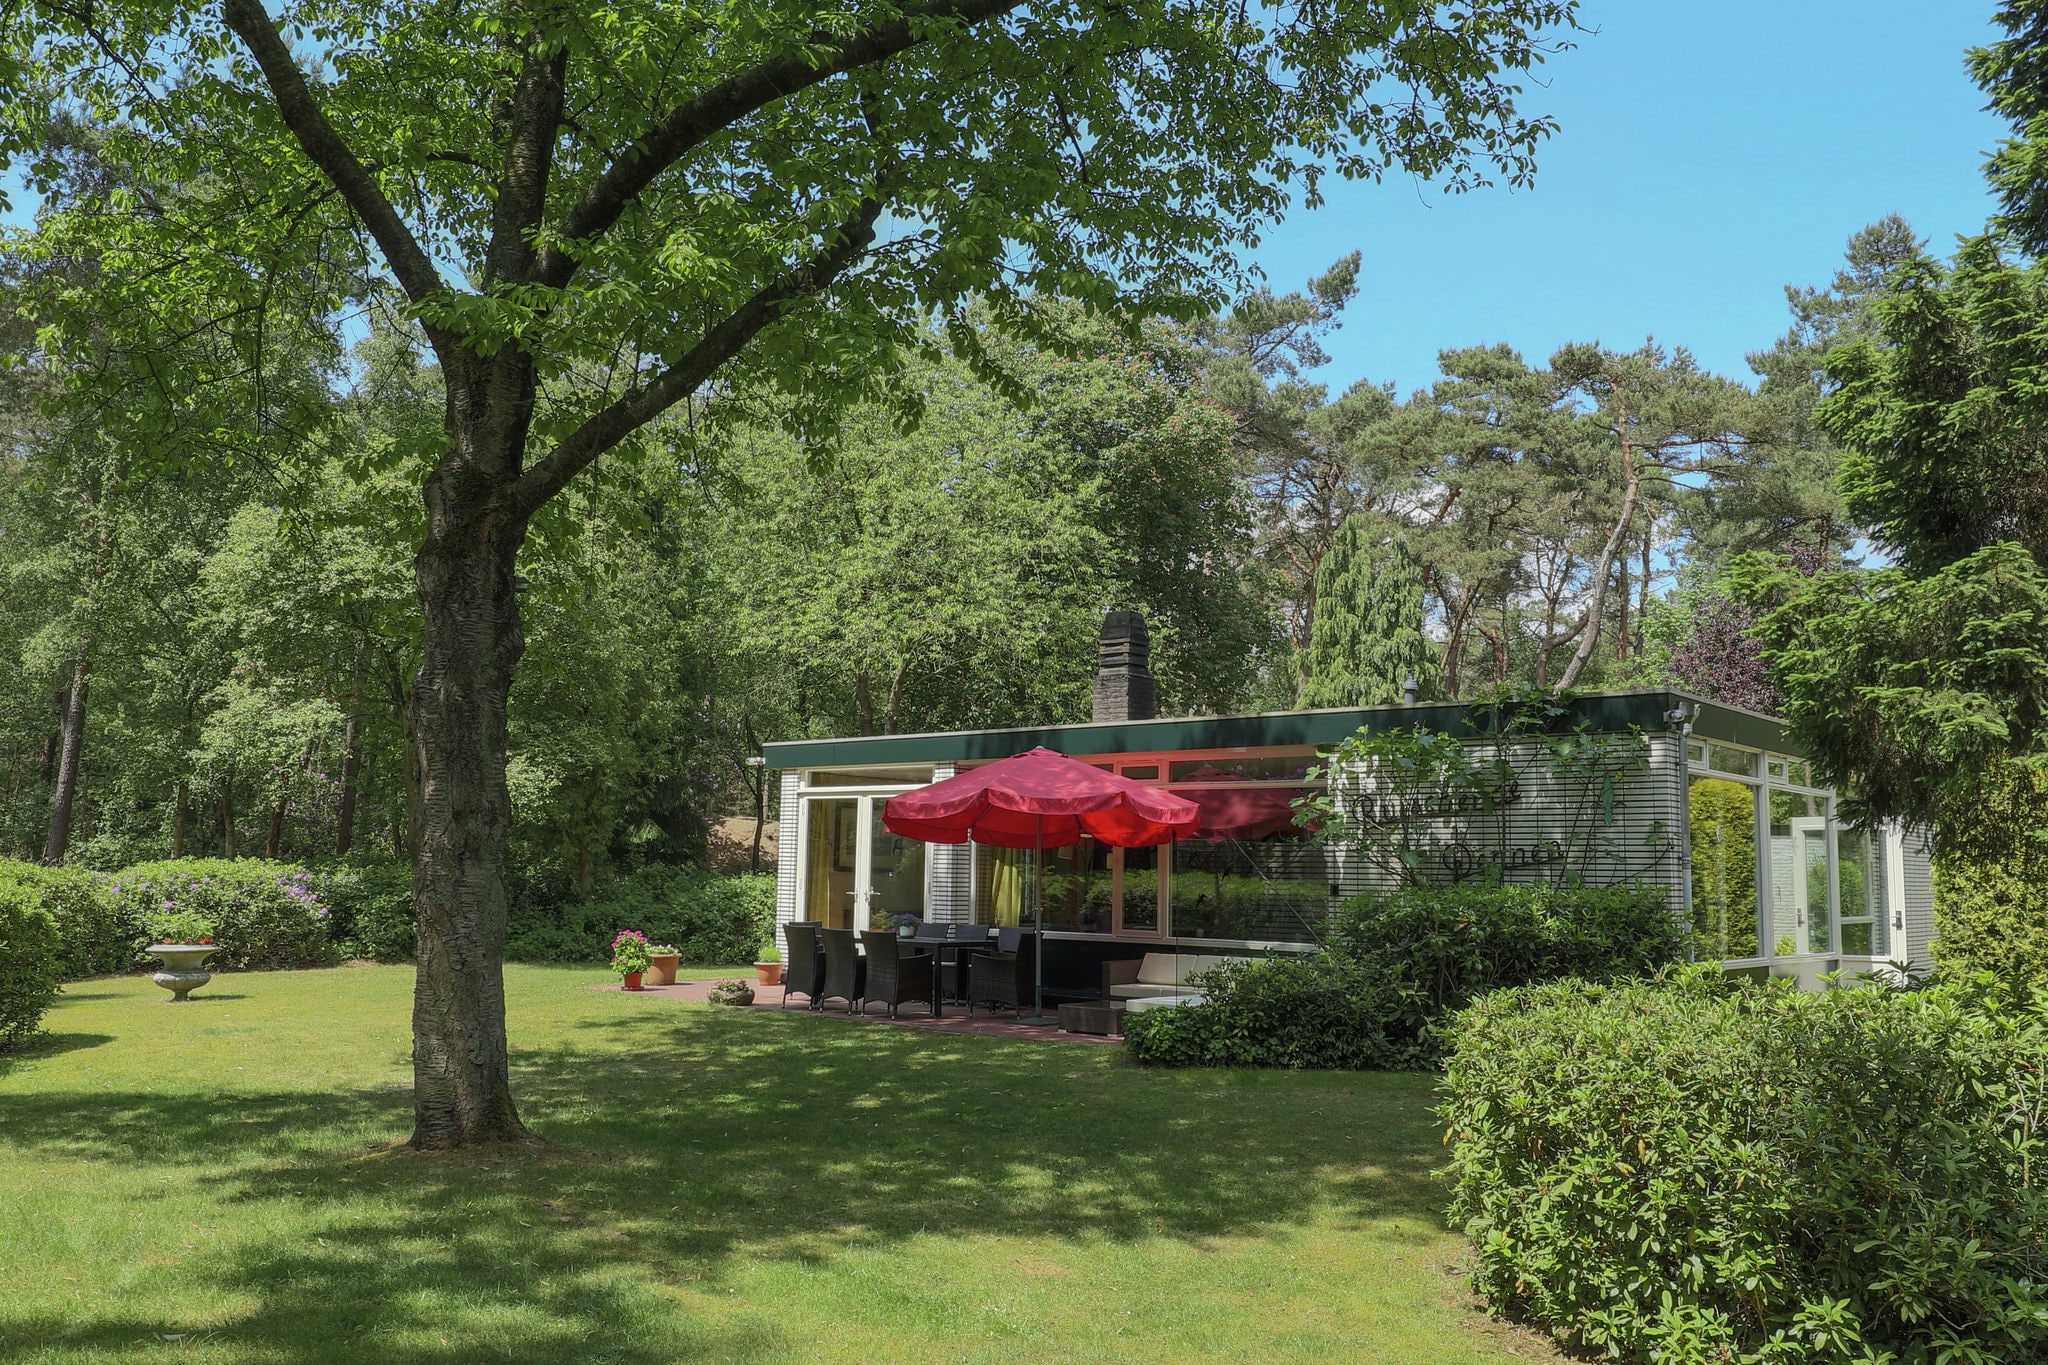 Maison de vacances avec jardin près de la forêt à Huijbergen